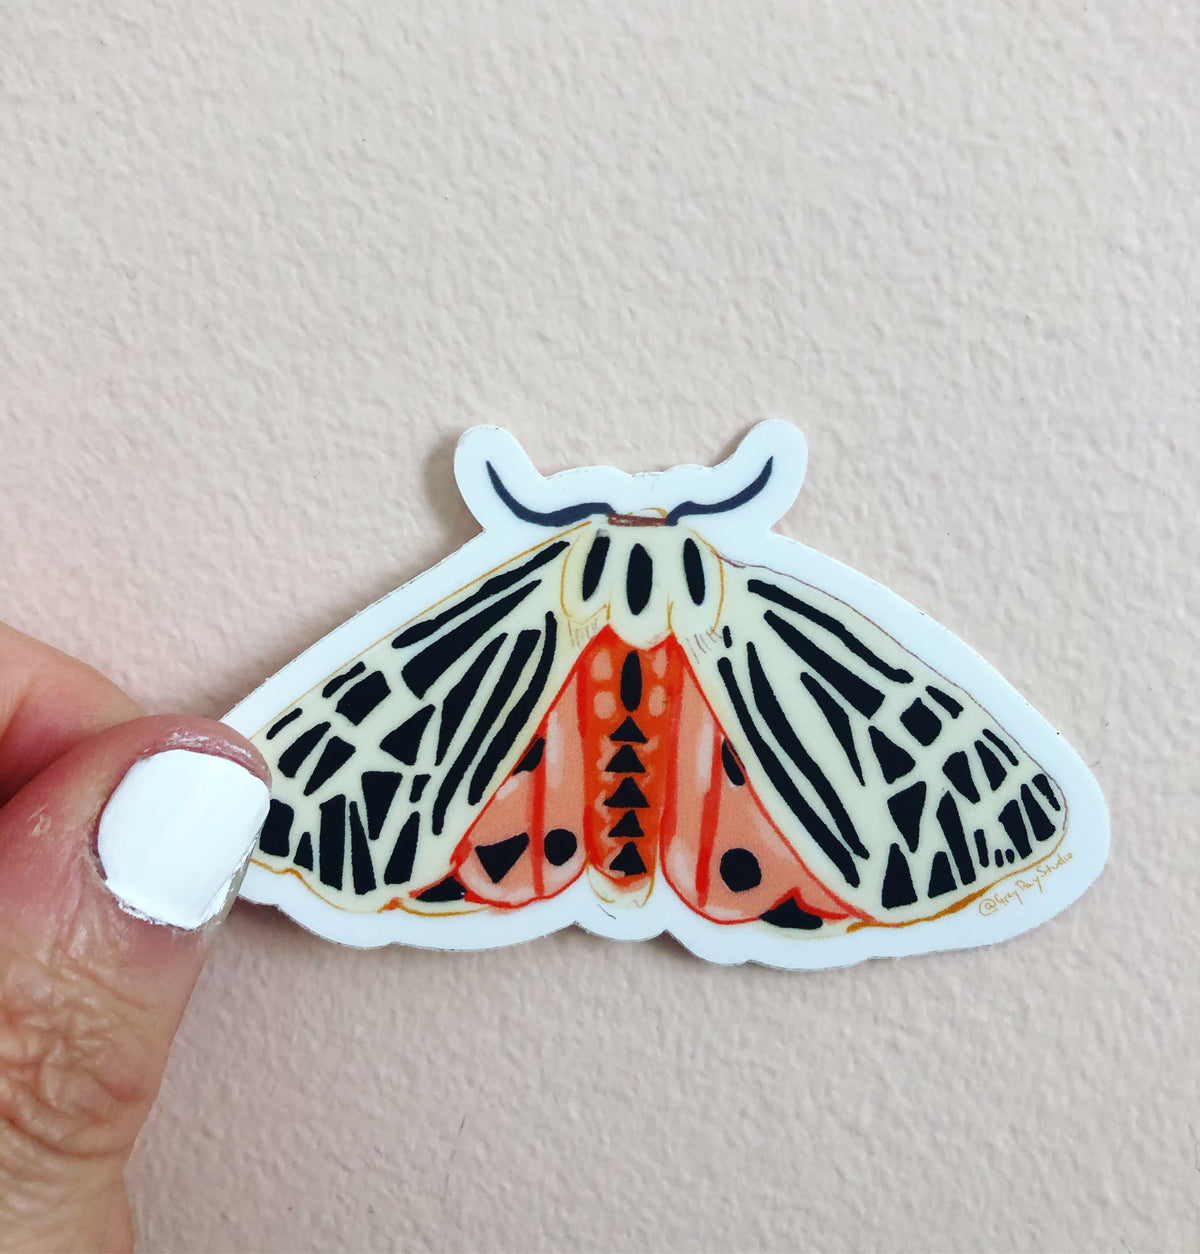 virgin tiger moth sticker, woodland sticker, moth sticker, by Abigail Gray Swartz